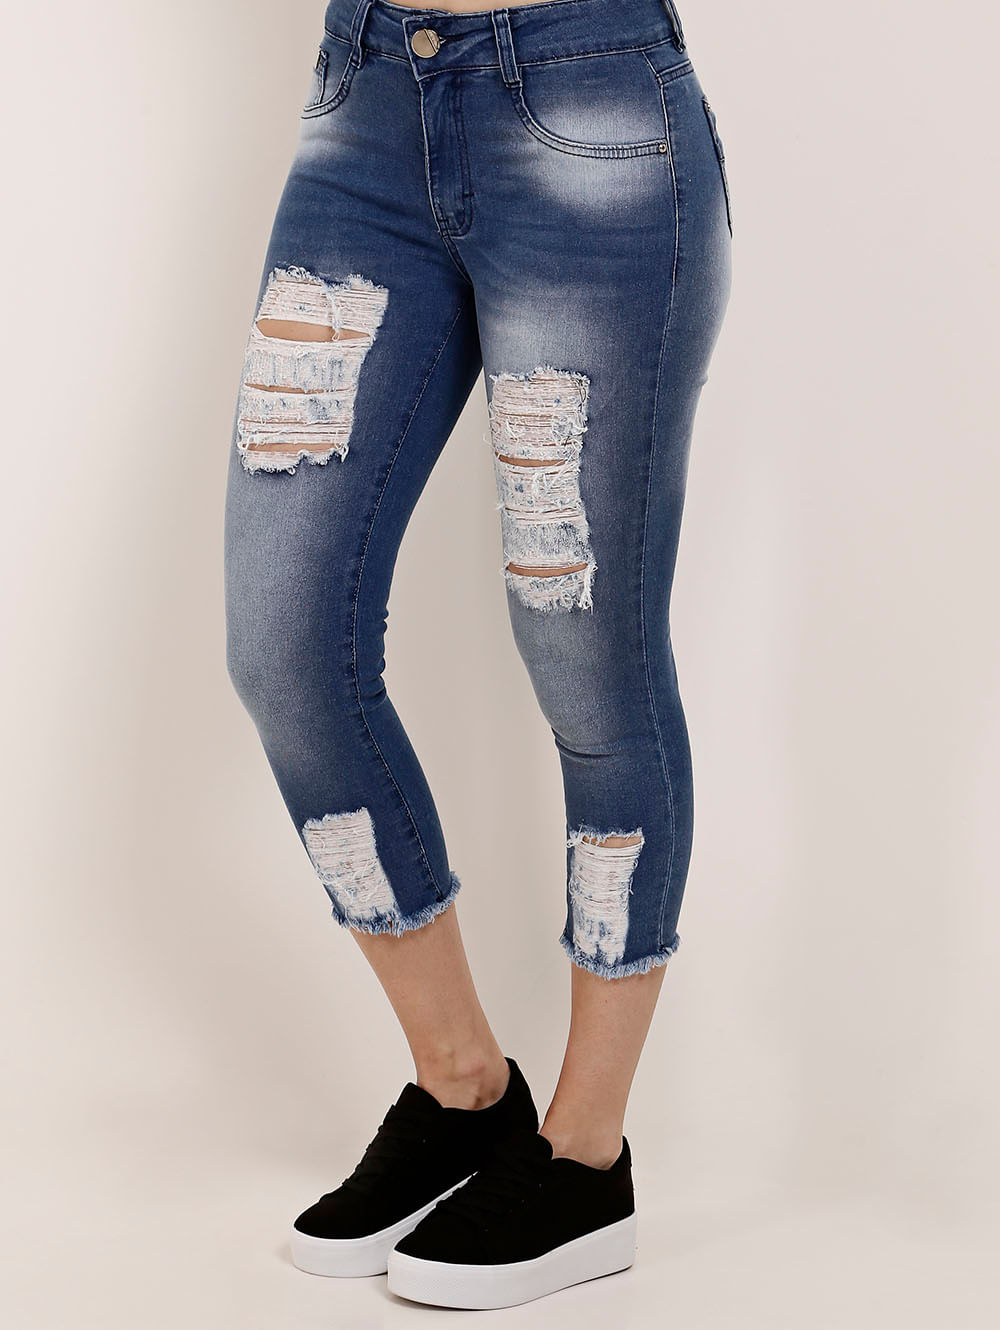 pompeia jeans